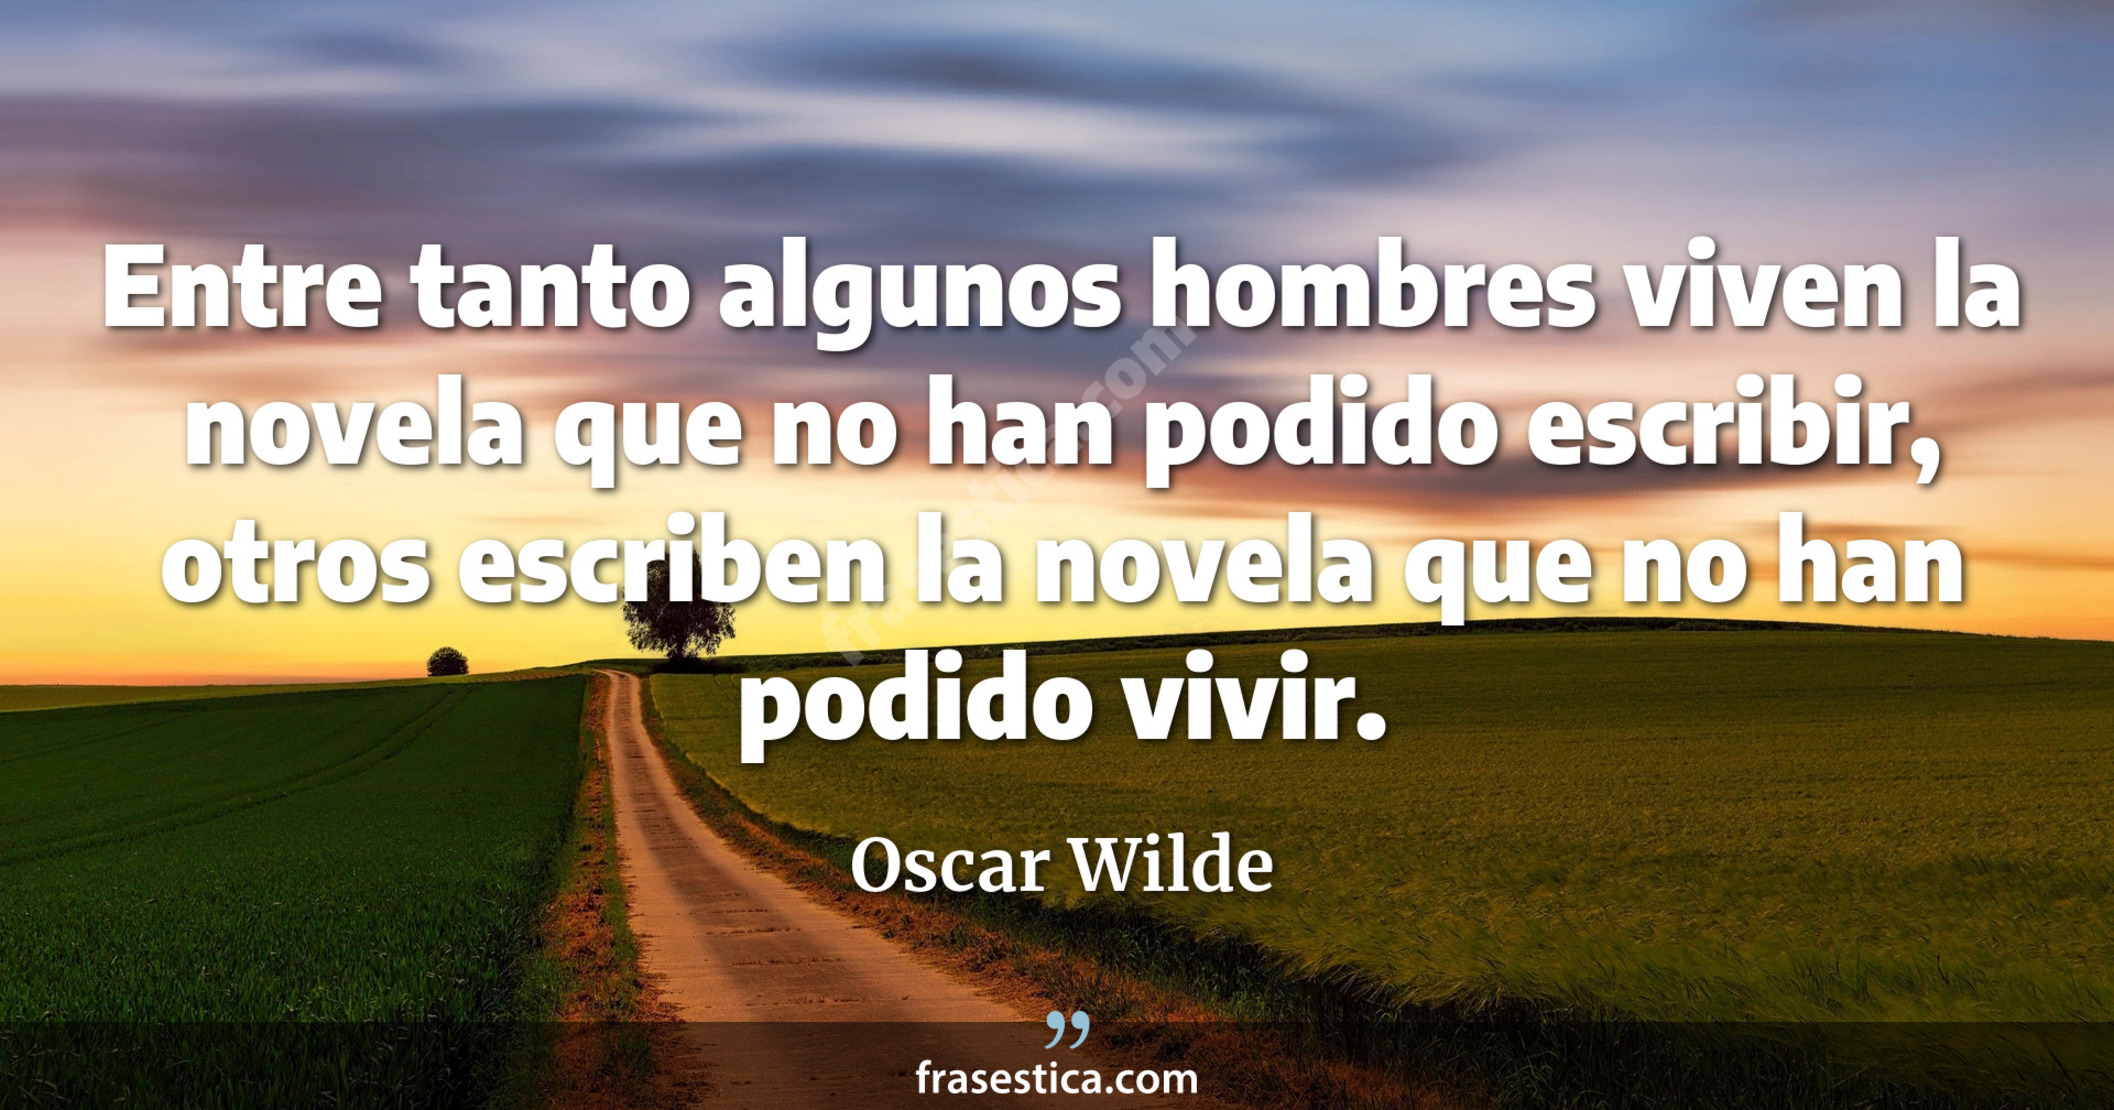 Entre tanto algunos hombres viven la novela que no han podido escribir, otros escriben la novela que no han podido vivir. - Oscar Wilde